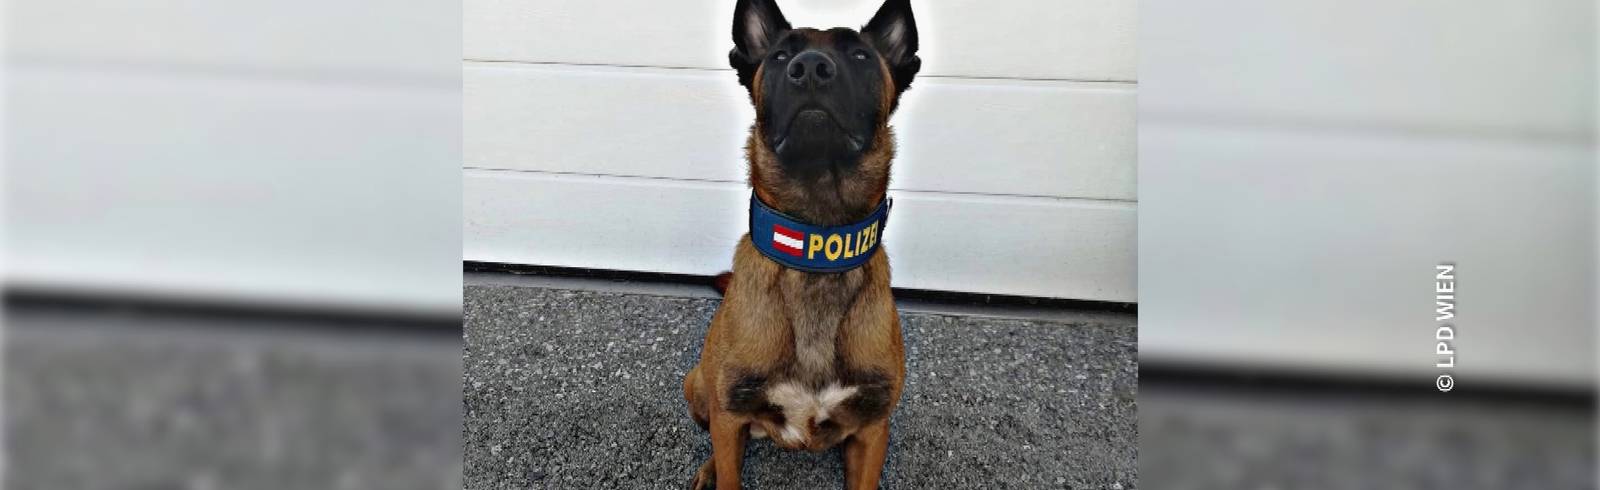 Bezirksflash: Polizeihund spürt Dieb auf